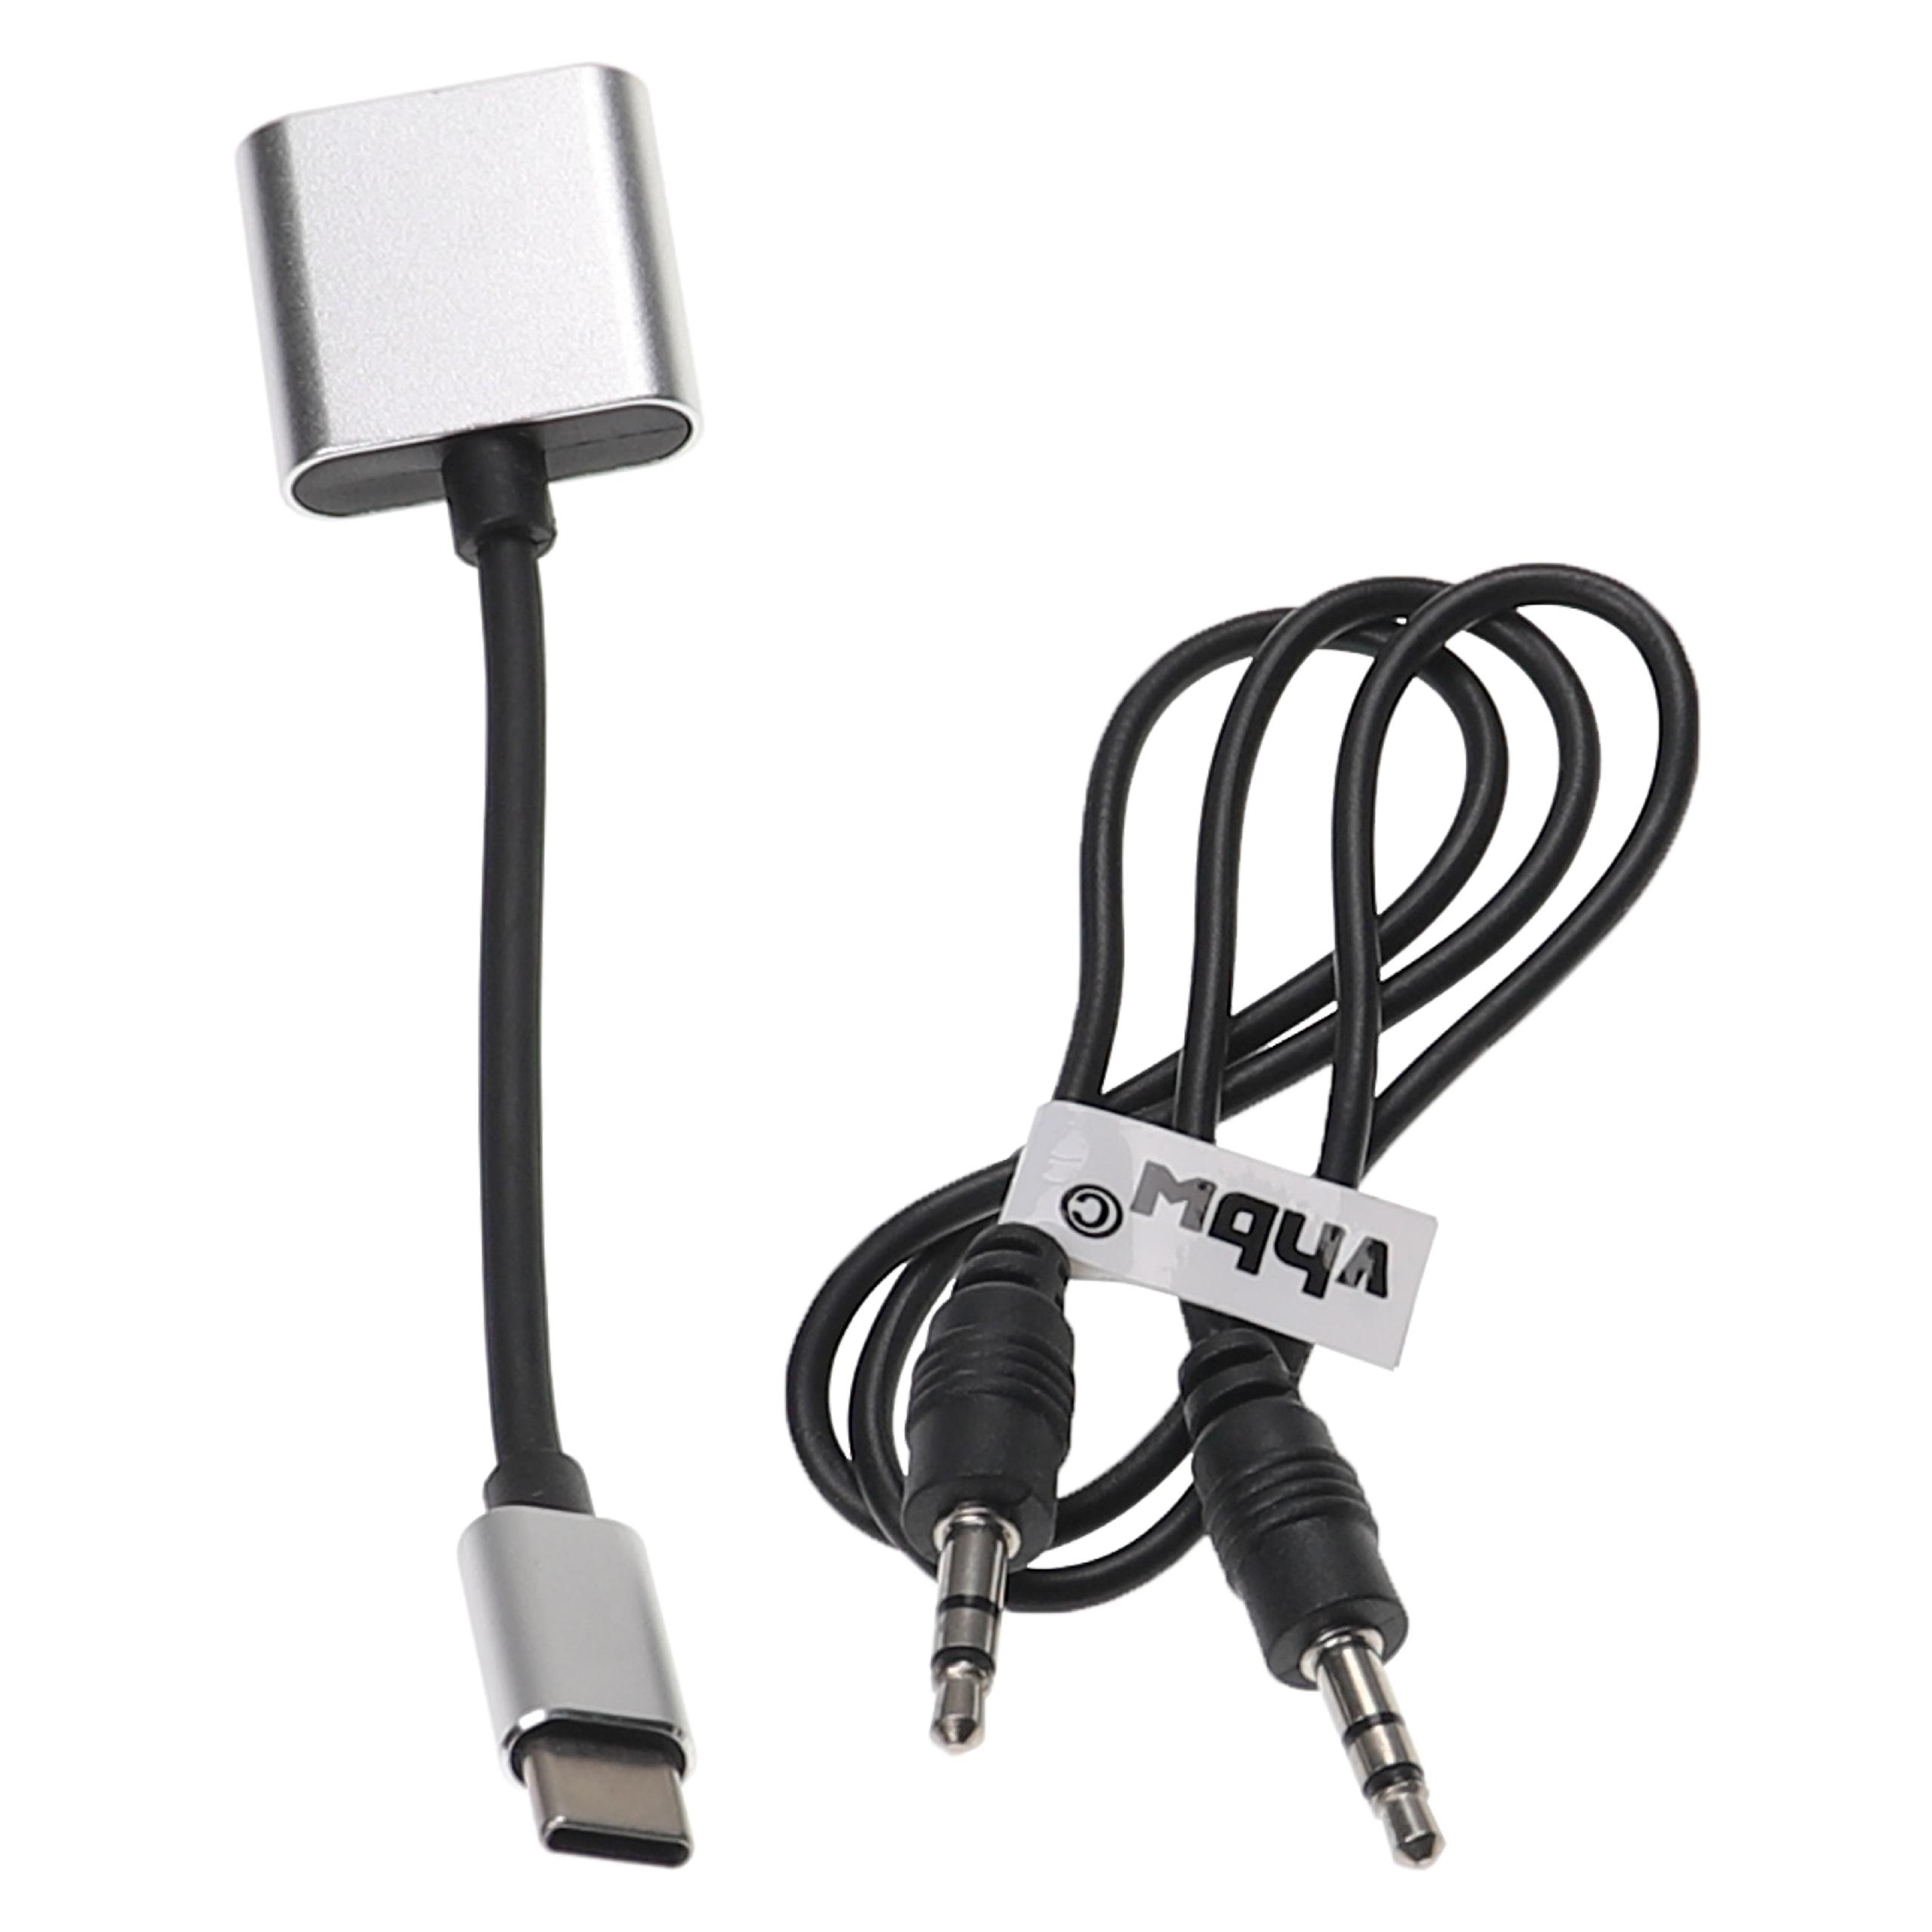 Adattatore 2-in-1 da USB-C a AUX per Huawei, Xiaomi, Motorola smartphone ecc. - Incl. cavo jack